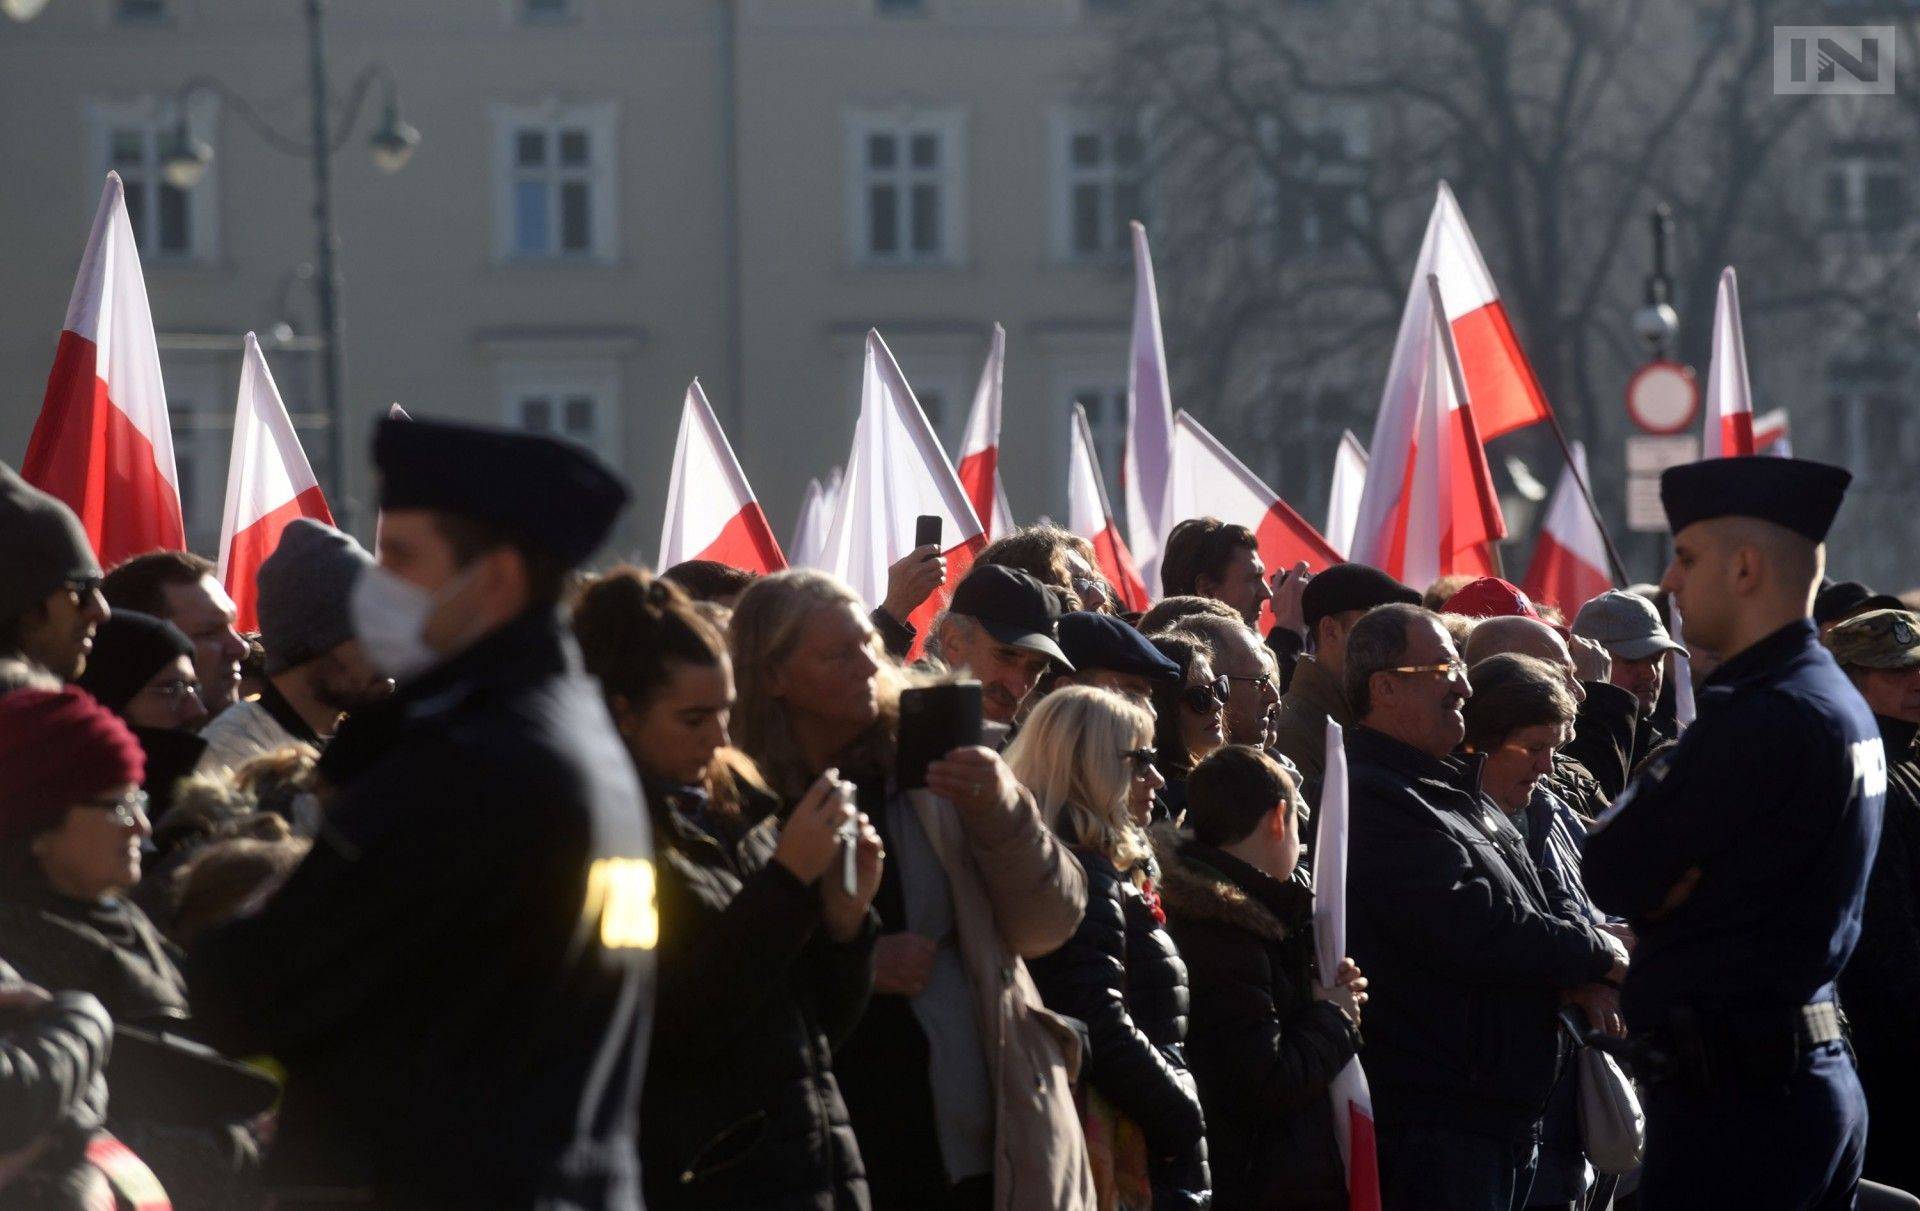 11 Listopada: Kaczyński w Krakowie, lotniczy pokaz, marsz, śpiew i bieganie